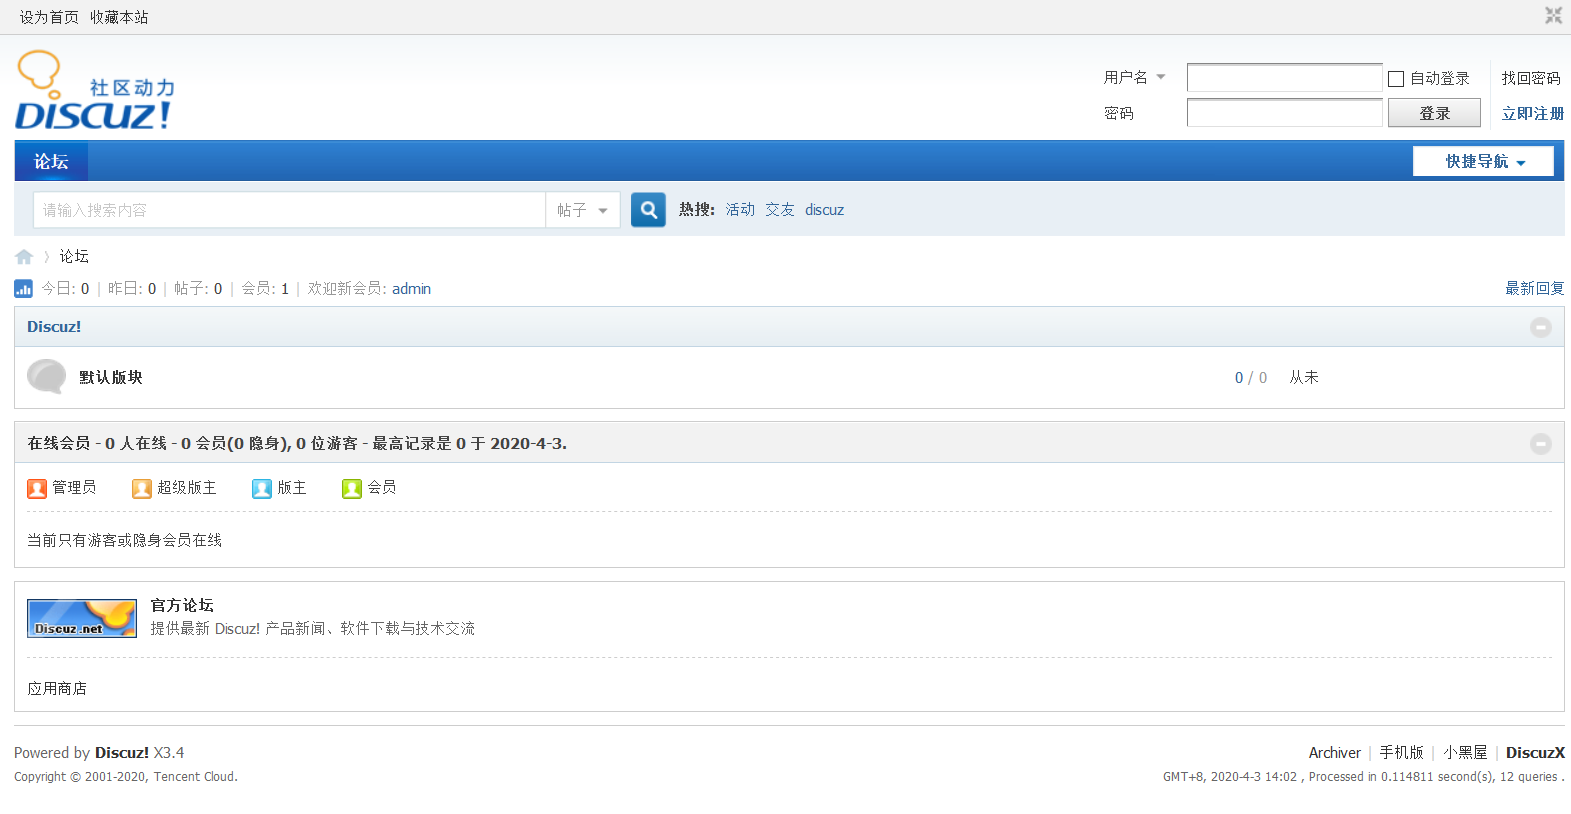 Forum php id. Boyxzeed2 similar. Boyxzeed Discuz. Форум php. Boyxzeed Chinese.